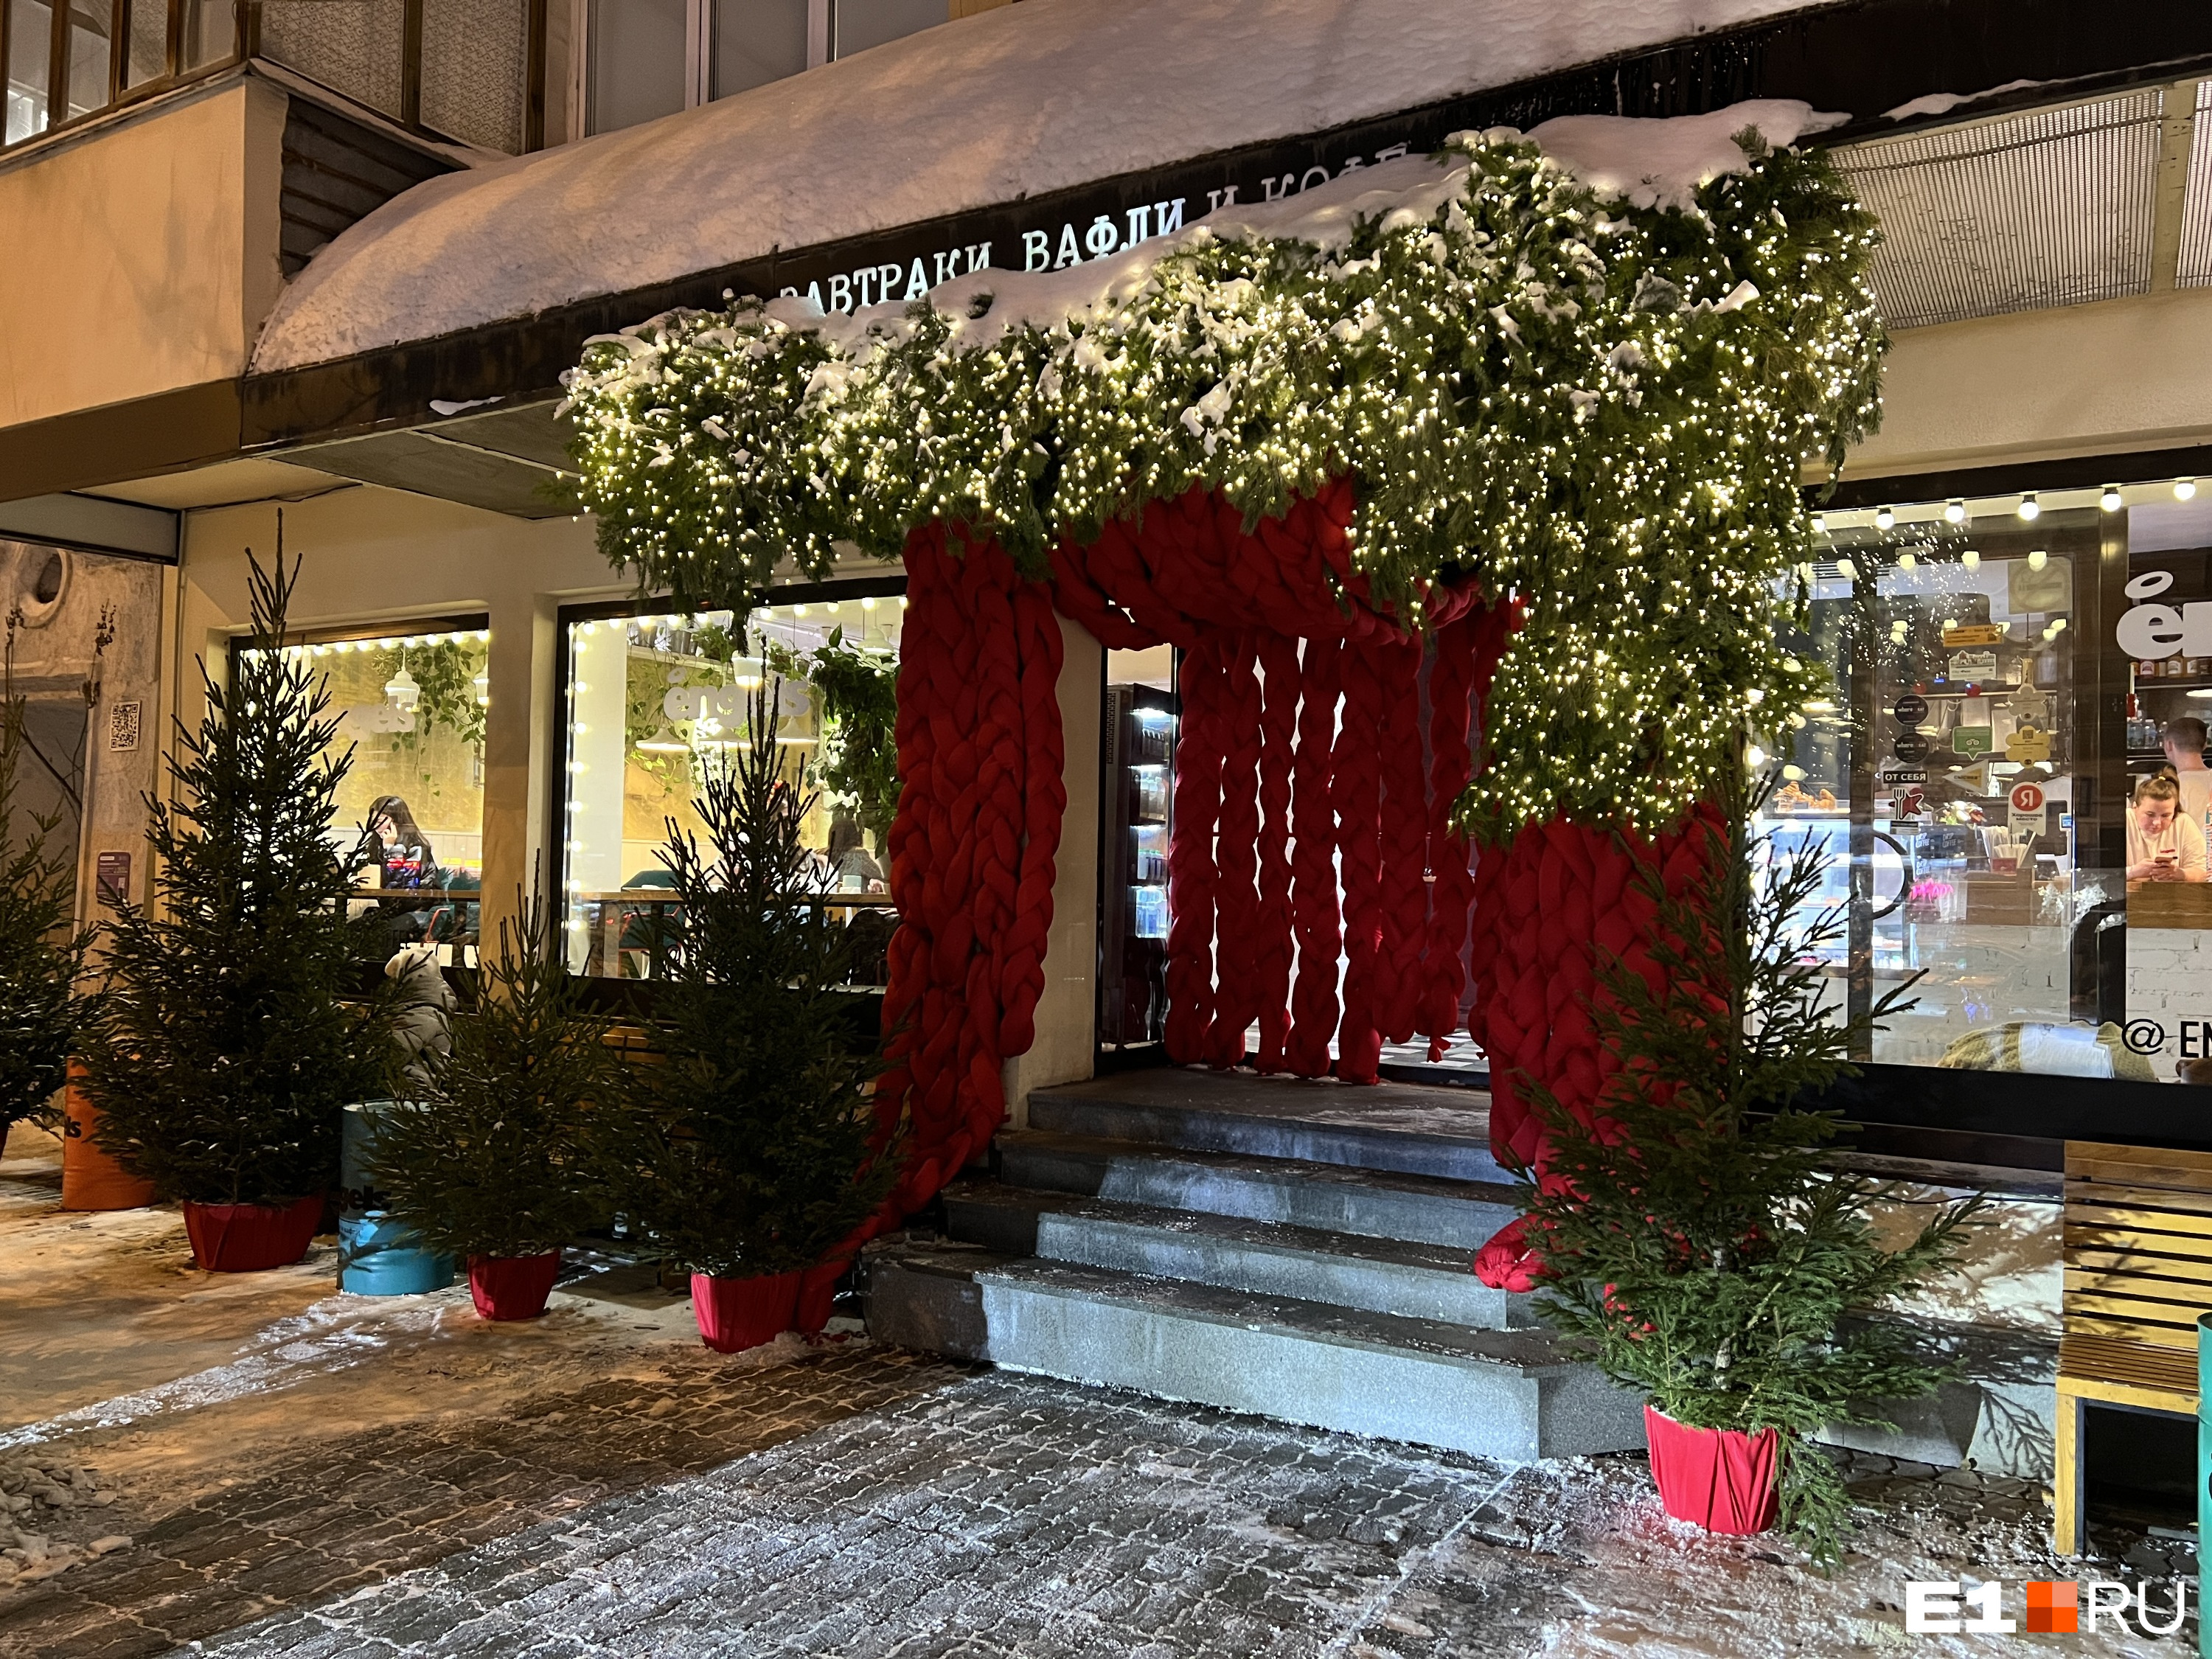 Ресторан в Екатеринбурге украсили гигантскими косами: красивая подборка новогоднего декора